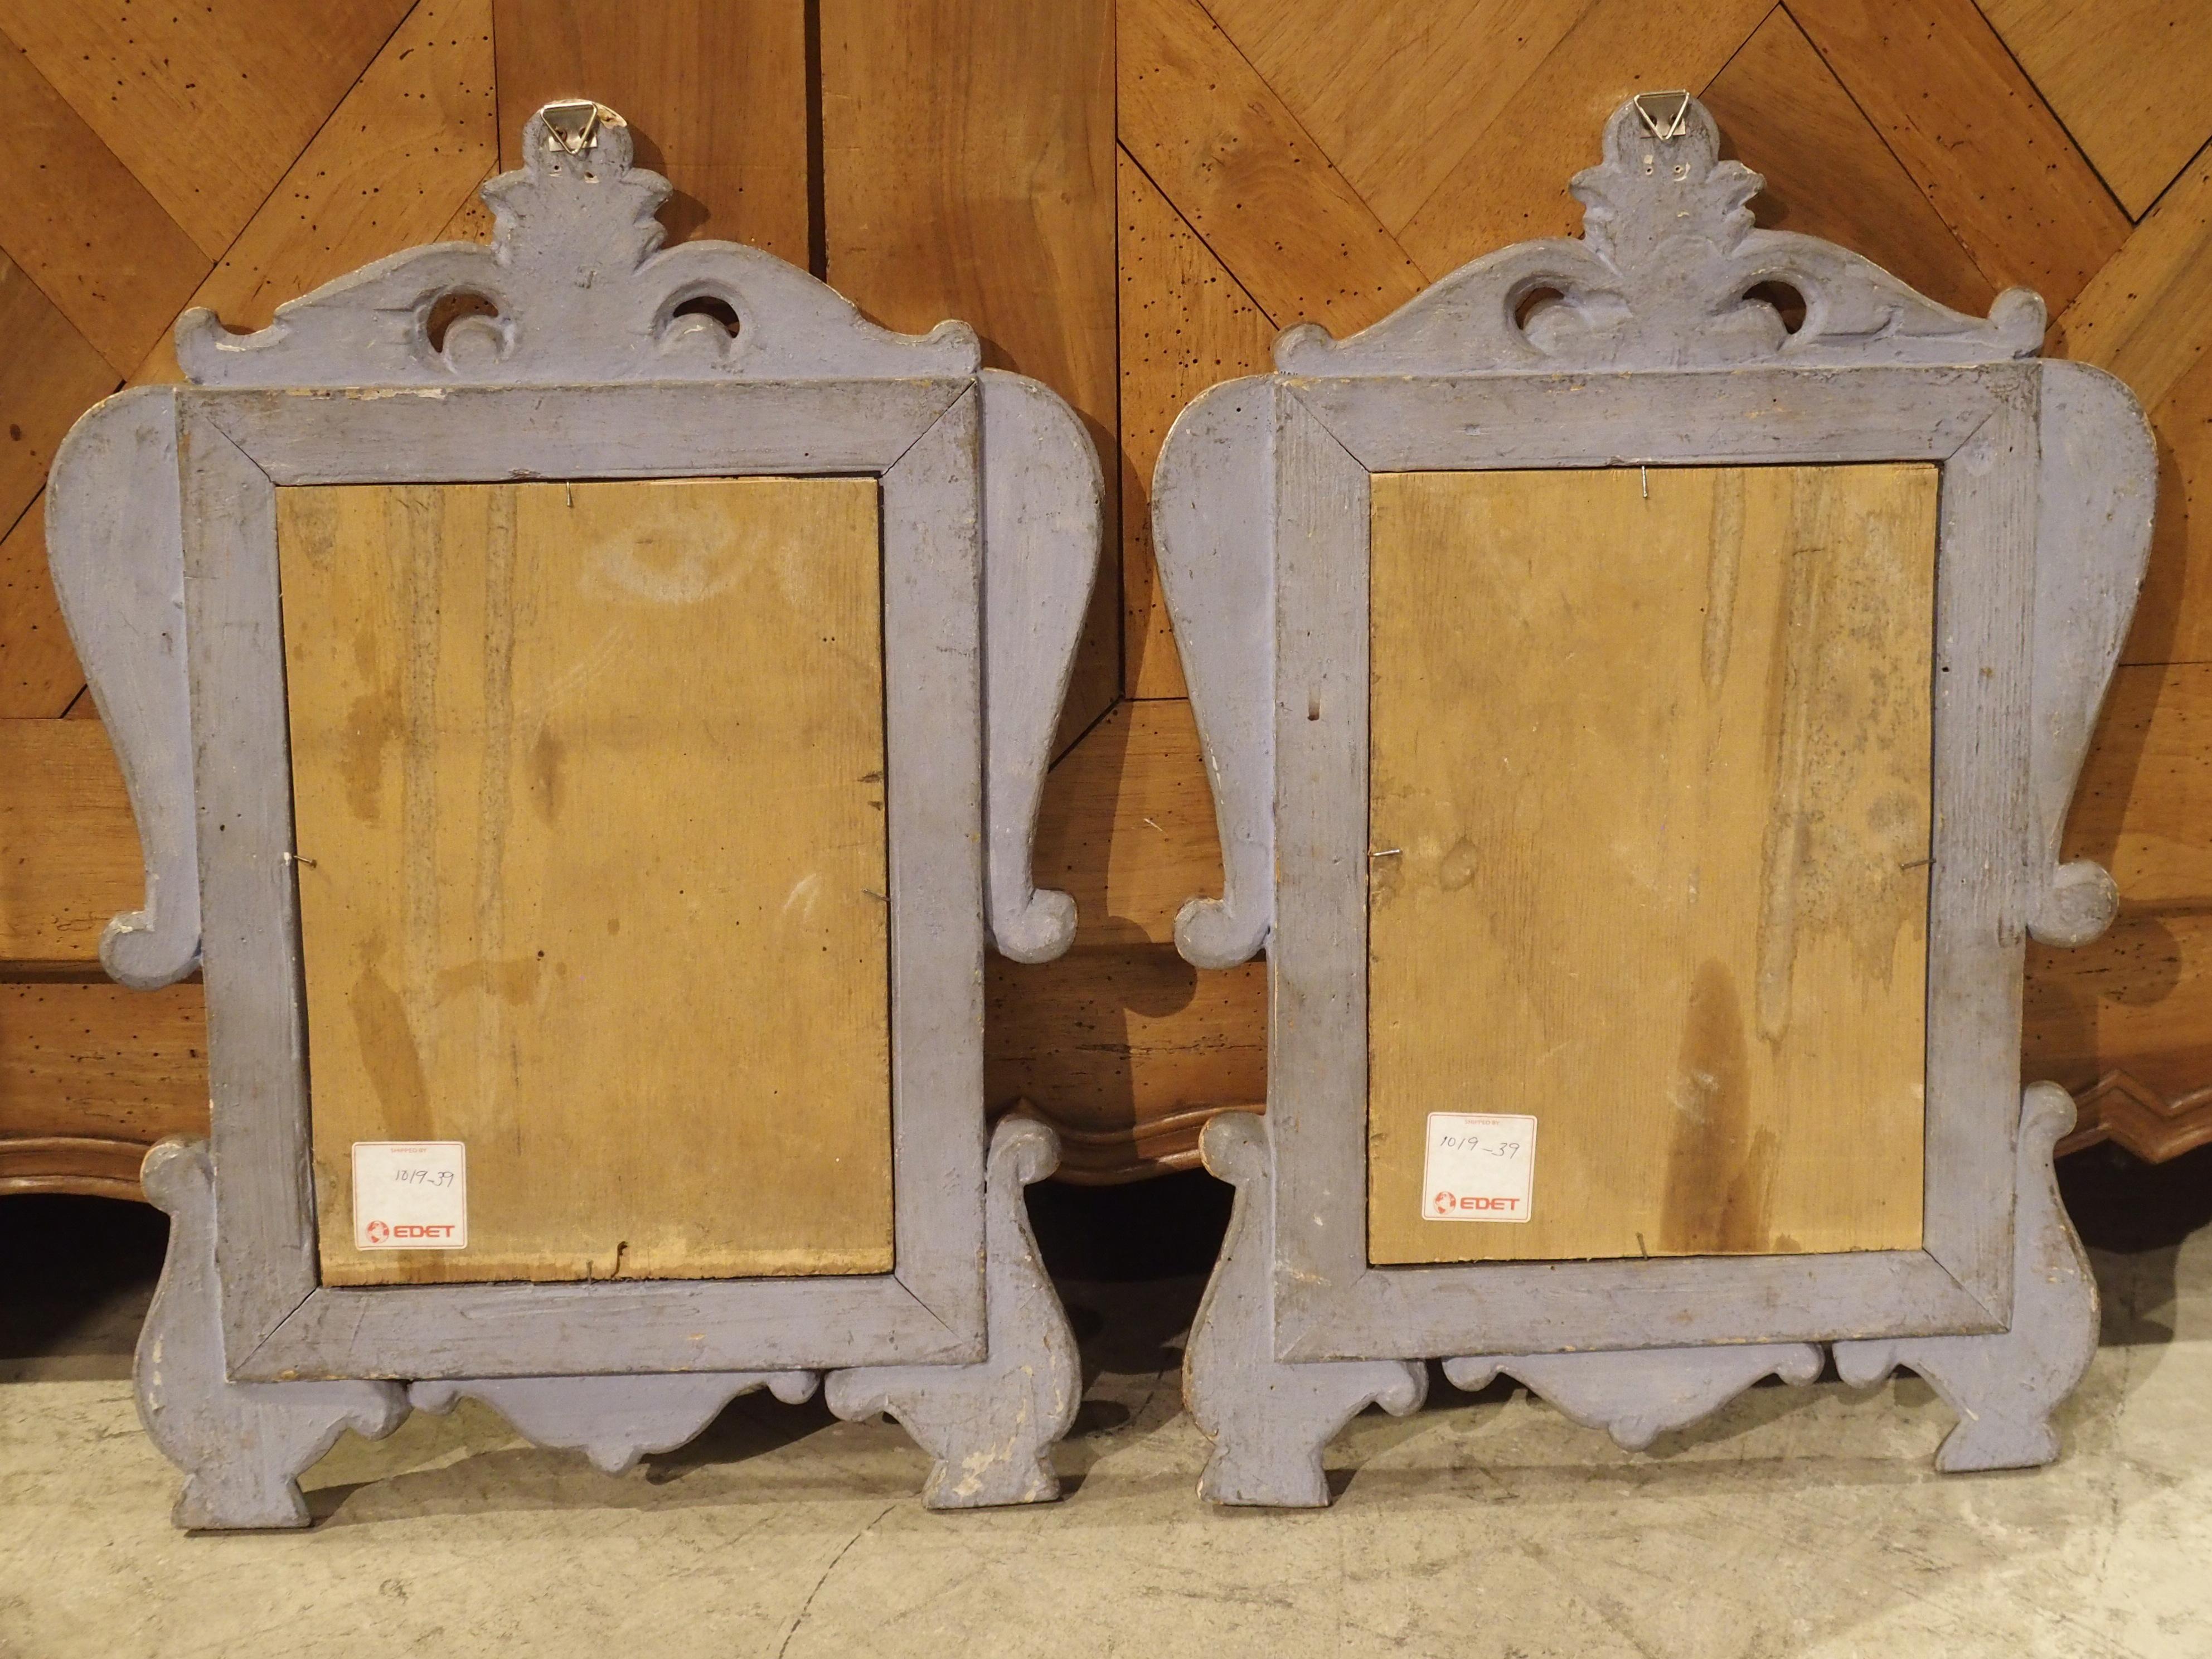 Ces petits miroirs muraux décoratifs proviennent d'Italie et datent de la fin des années 1700. Ils ont une forme rectiligne simple, ornée de motifs sculptés en volutes sur la couronne, les épaules et les angles inférieurs. Une petite fleur de lys